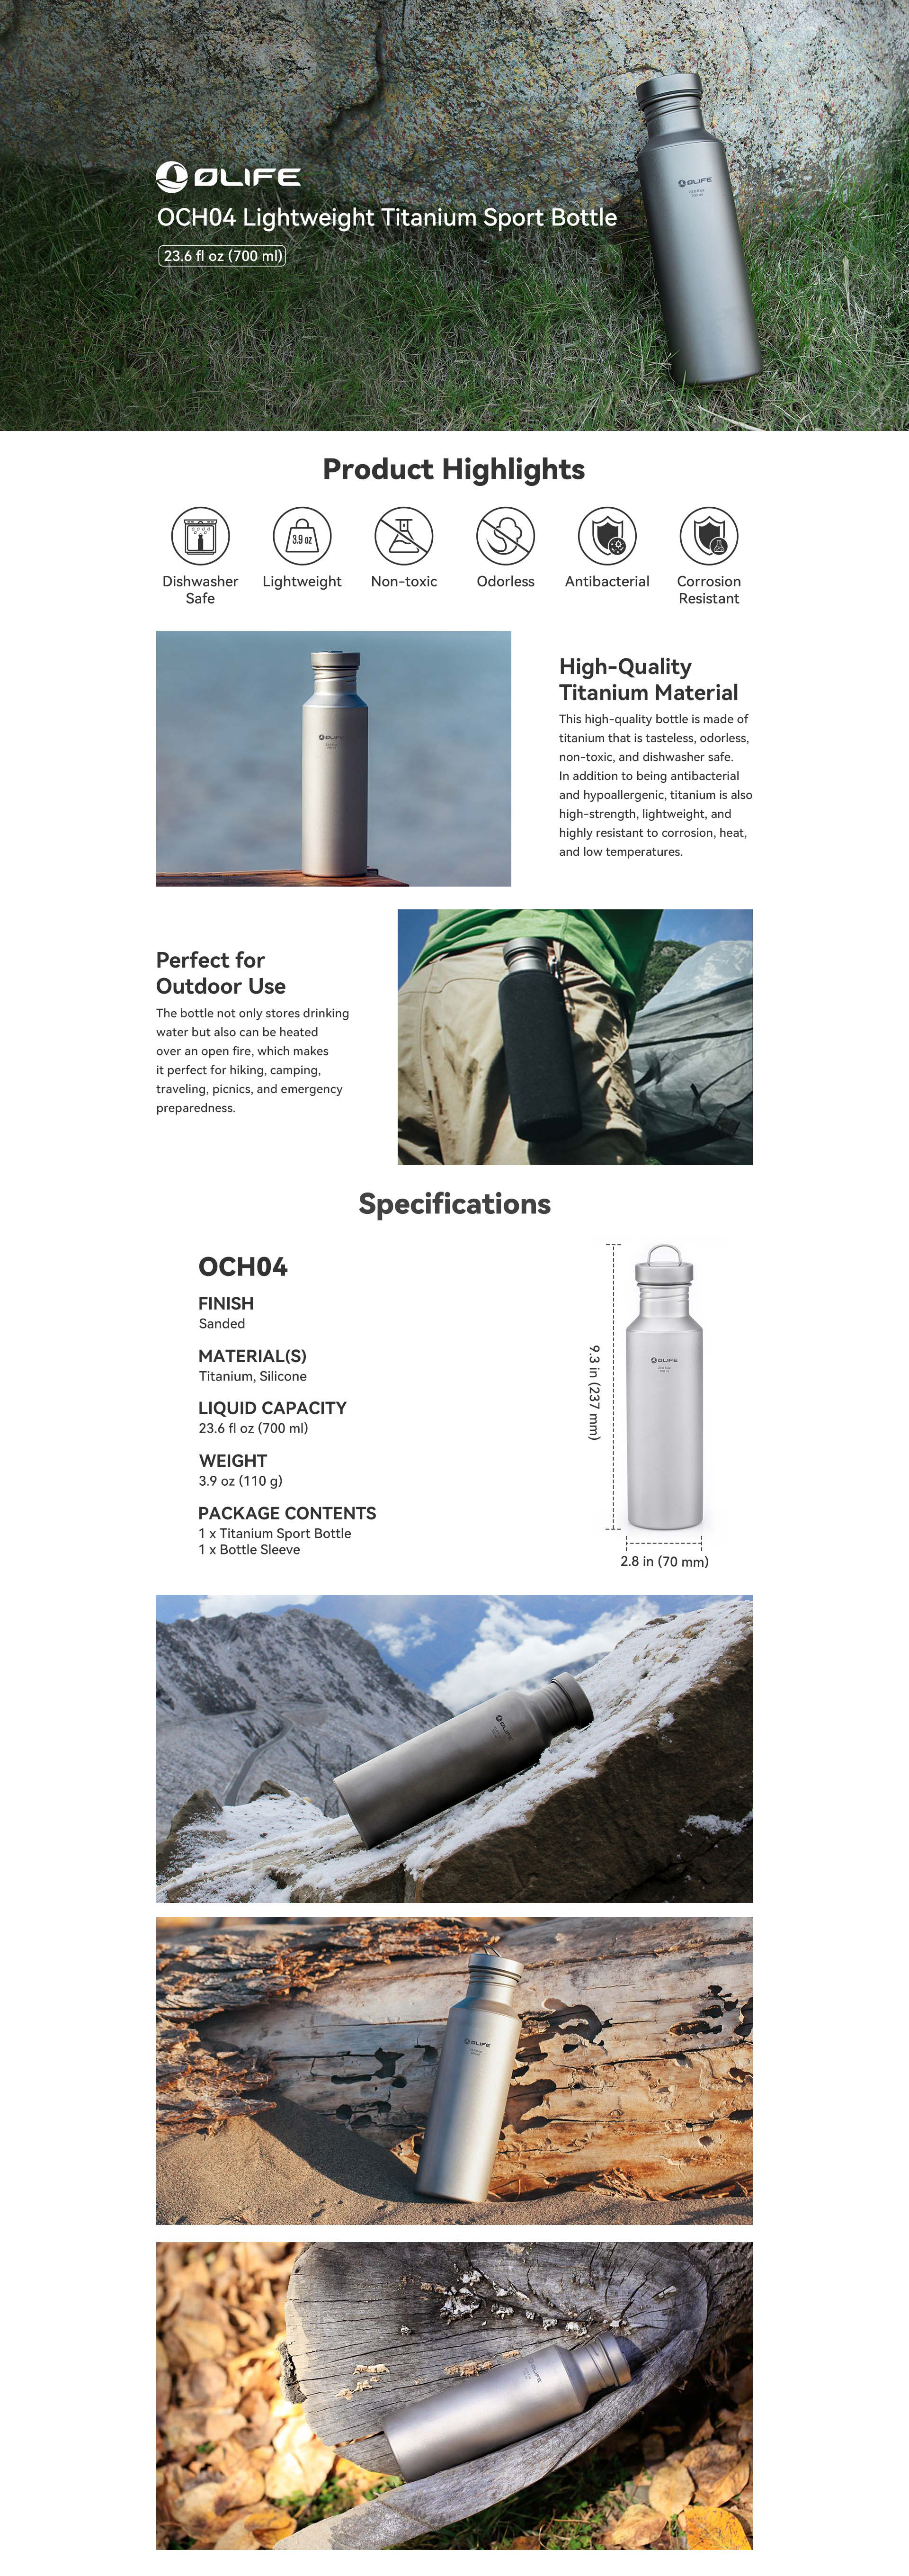 OLIFE OCH04 Lightweight Titanium Sport Bottle - Olight Store